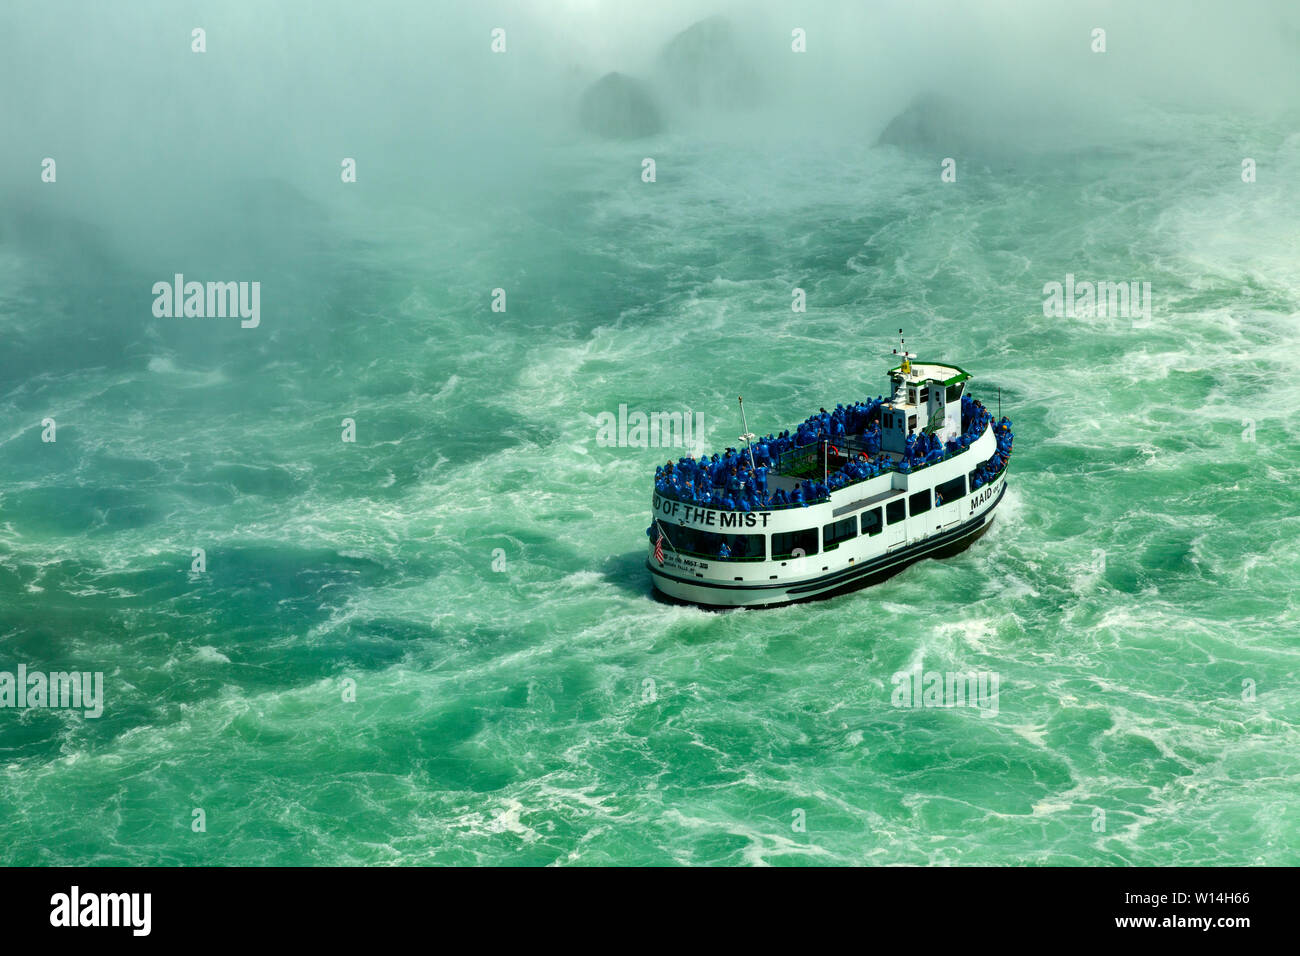 The Maid of the Mist tourist boats at Niagara Falls, NY USA Stock Photo